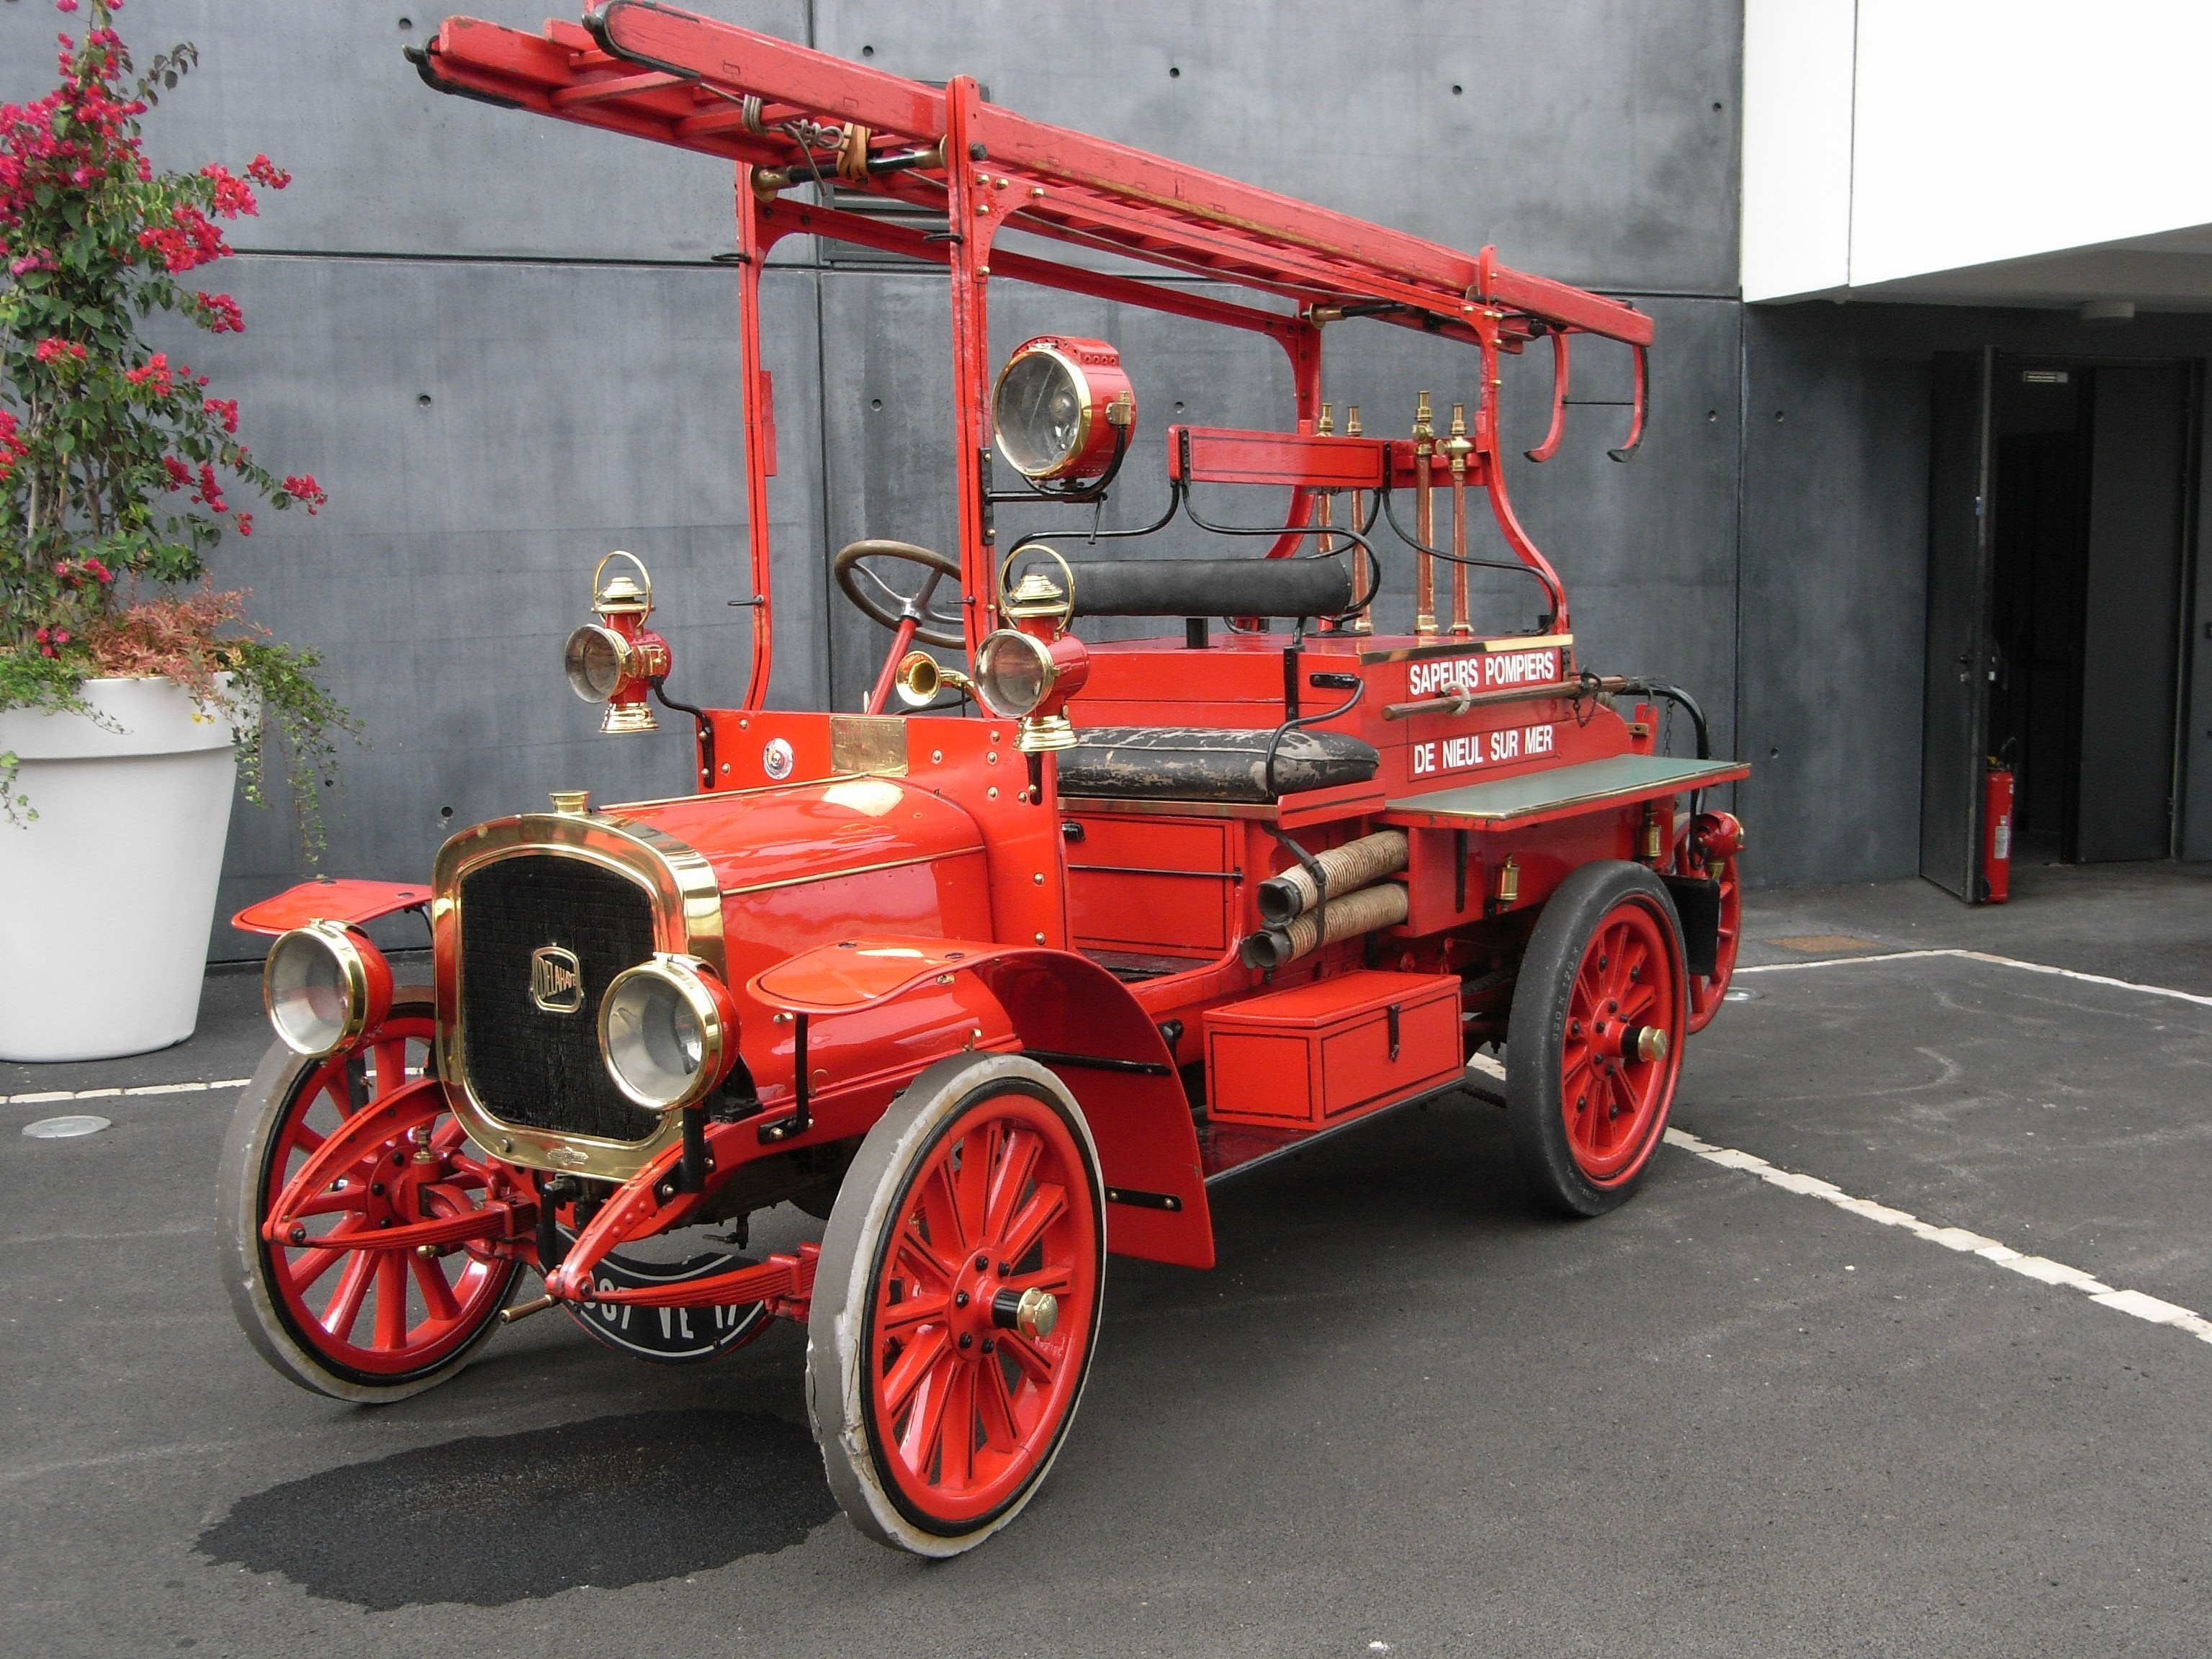 Первые пожарные машины. Пожарная машина Вандерберг 1901. Delahaye пожарная машина. Первая пожарная машина в России 1904. Старинные пожарные автомобили.